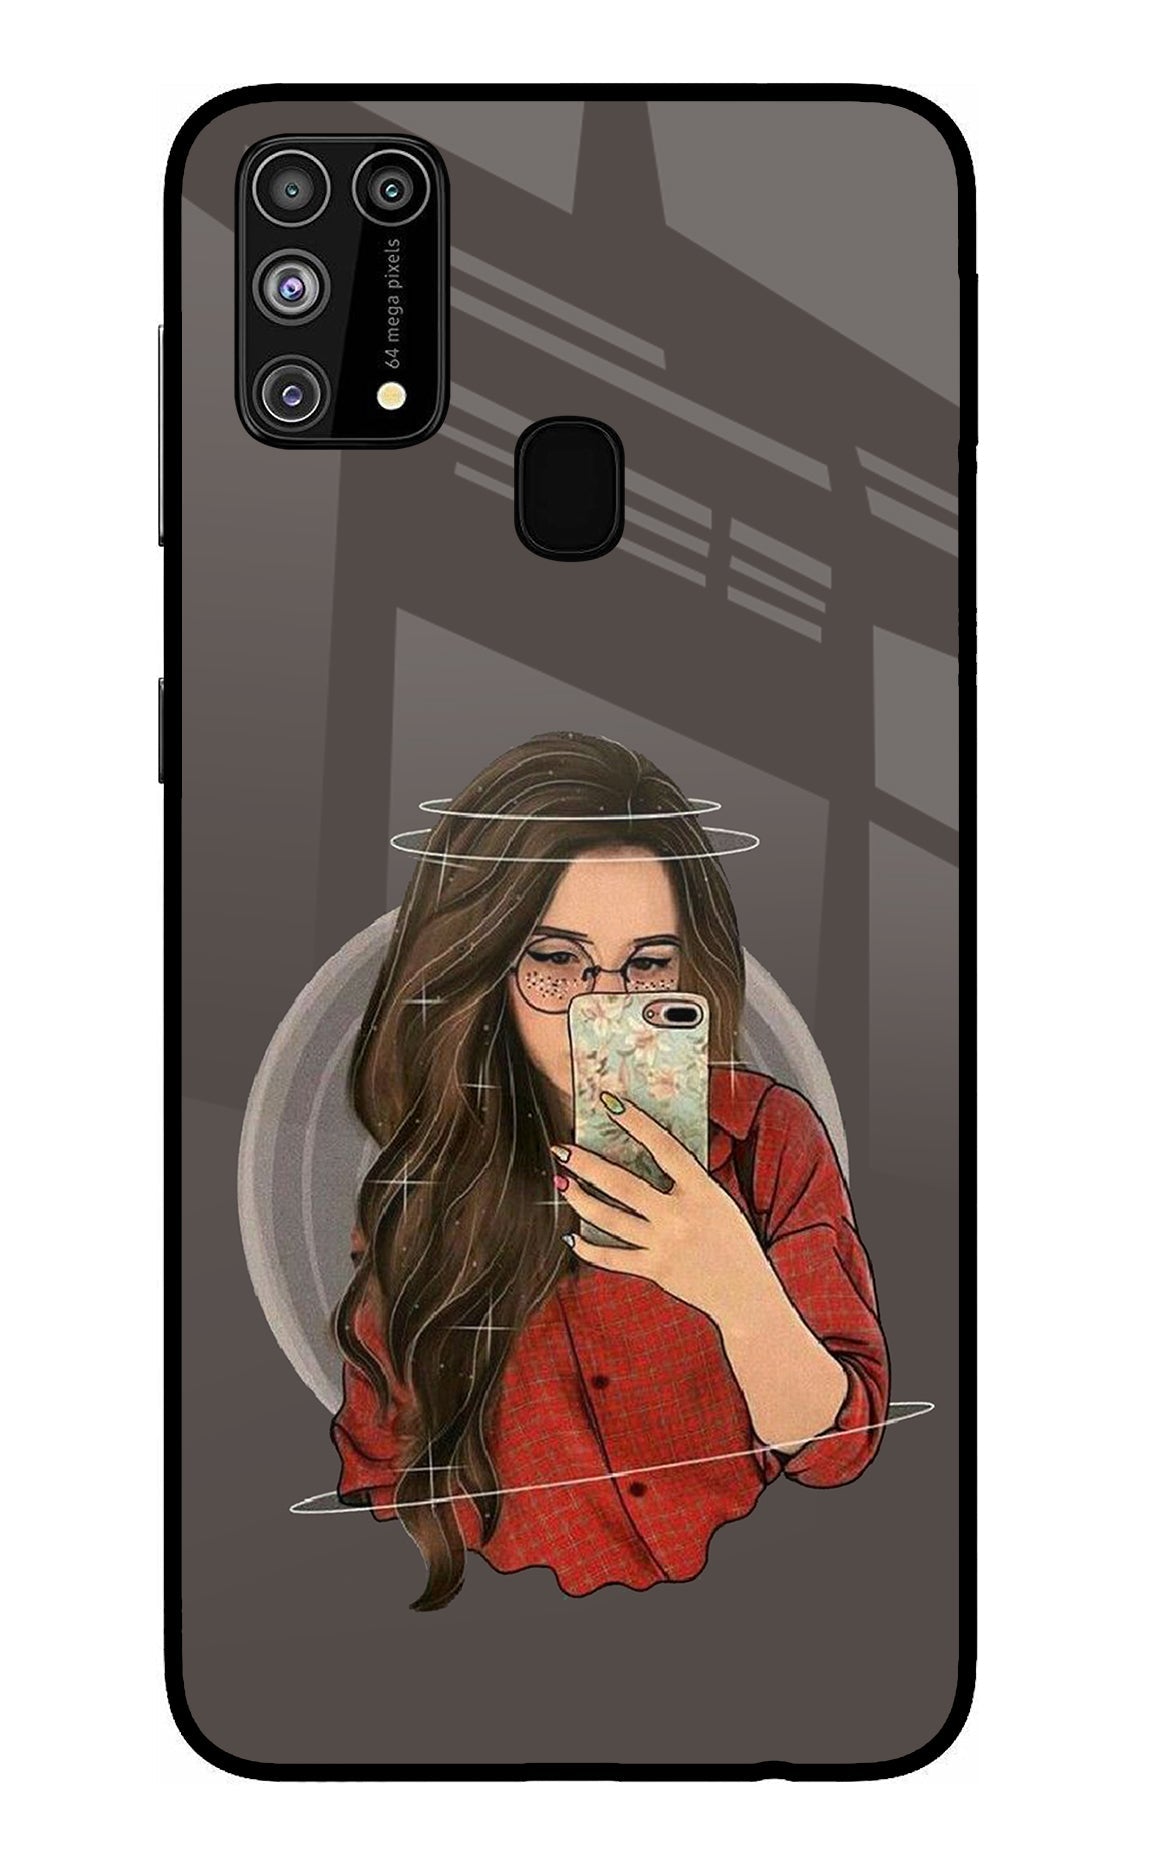 Selfie Queen Samsung M31/F41 Glass Case